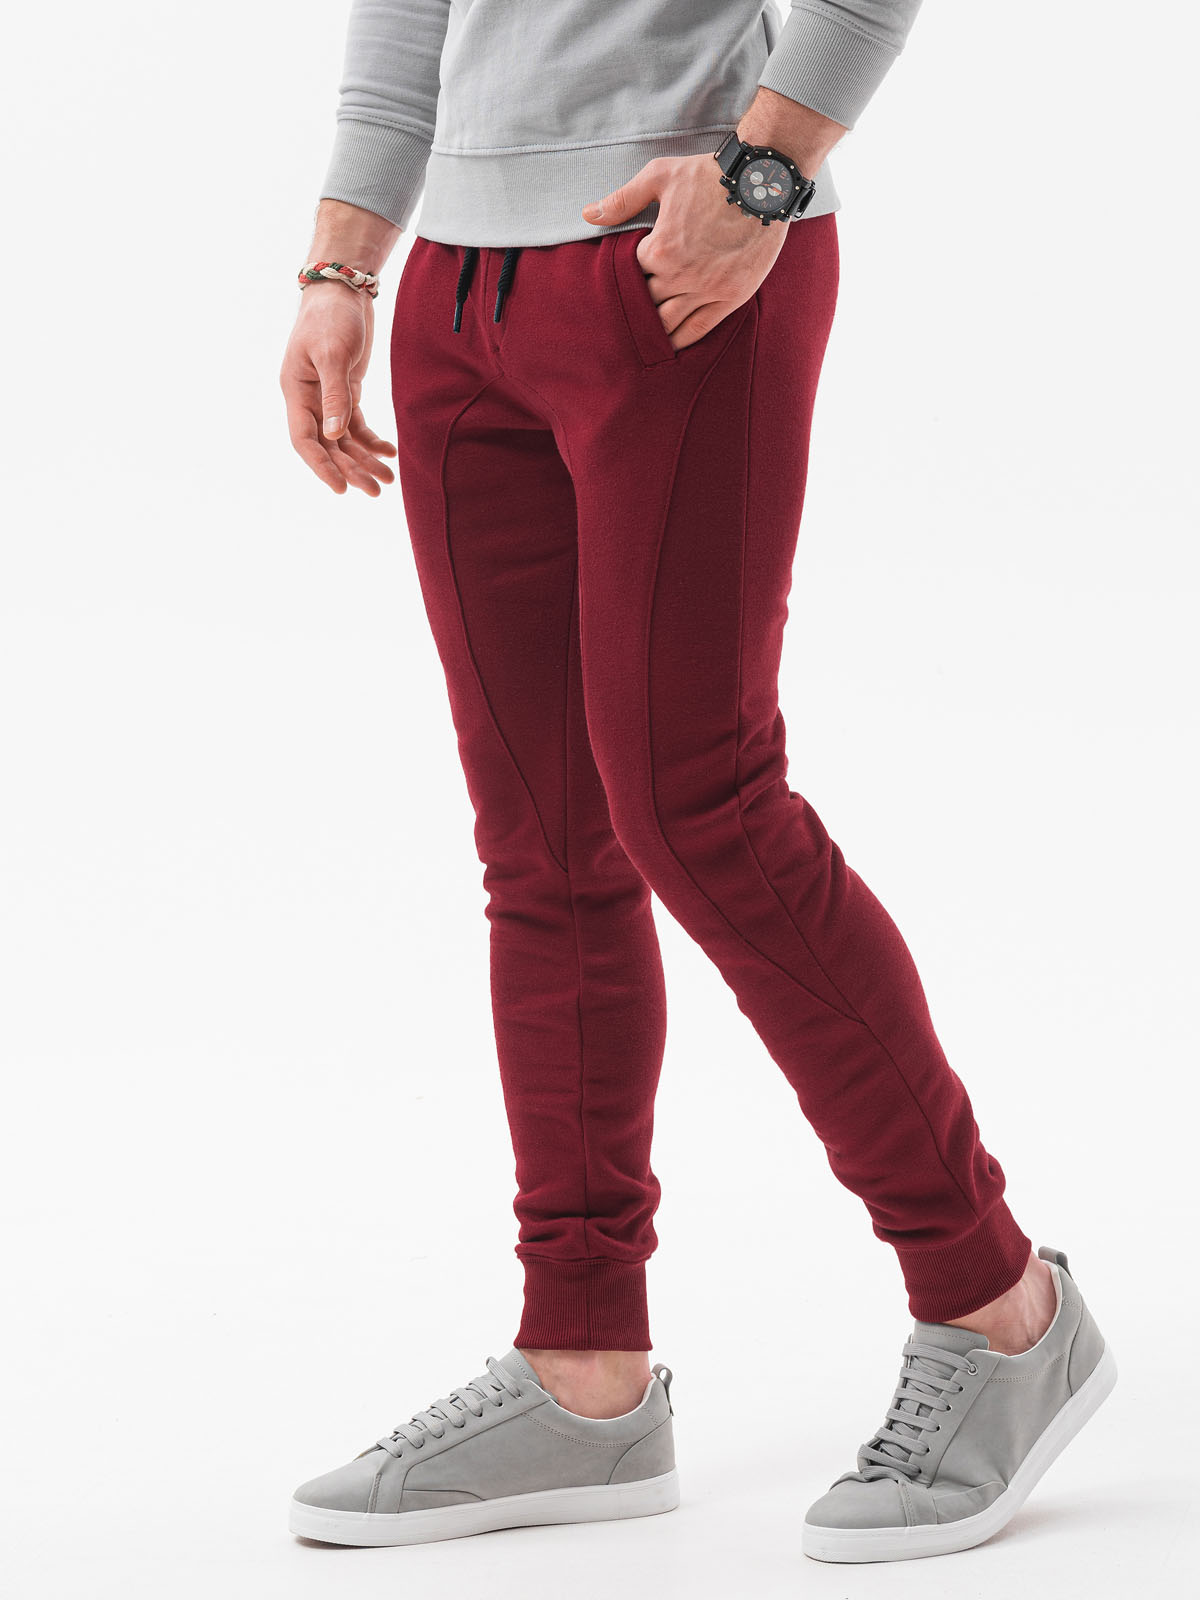 Spodnie męskie dresowe joggery P867 - bordowe - S Ombre Clothing